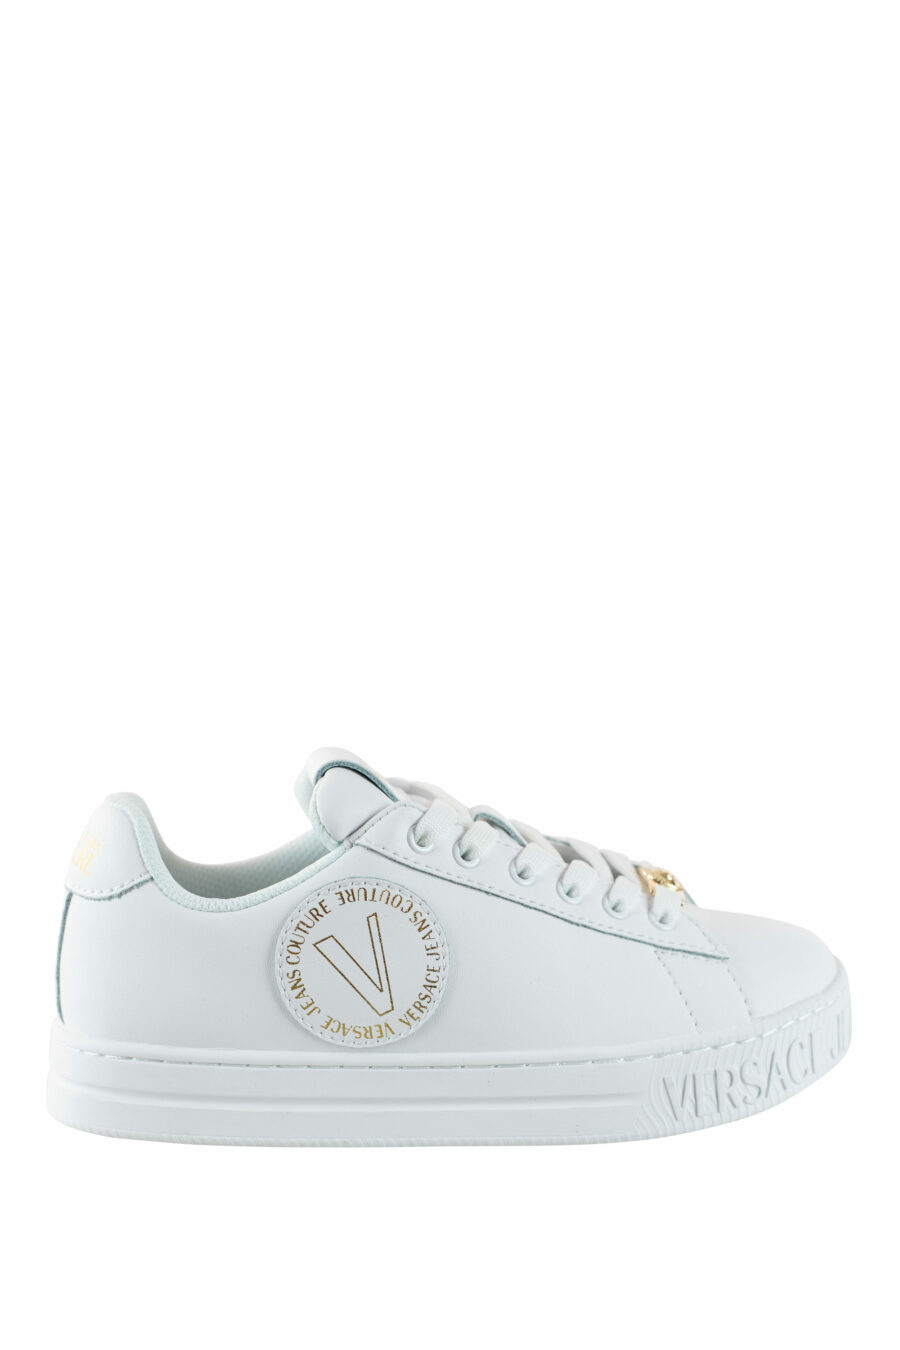 Zapatillas blancas y doradas con logo circular - IMG 4549